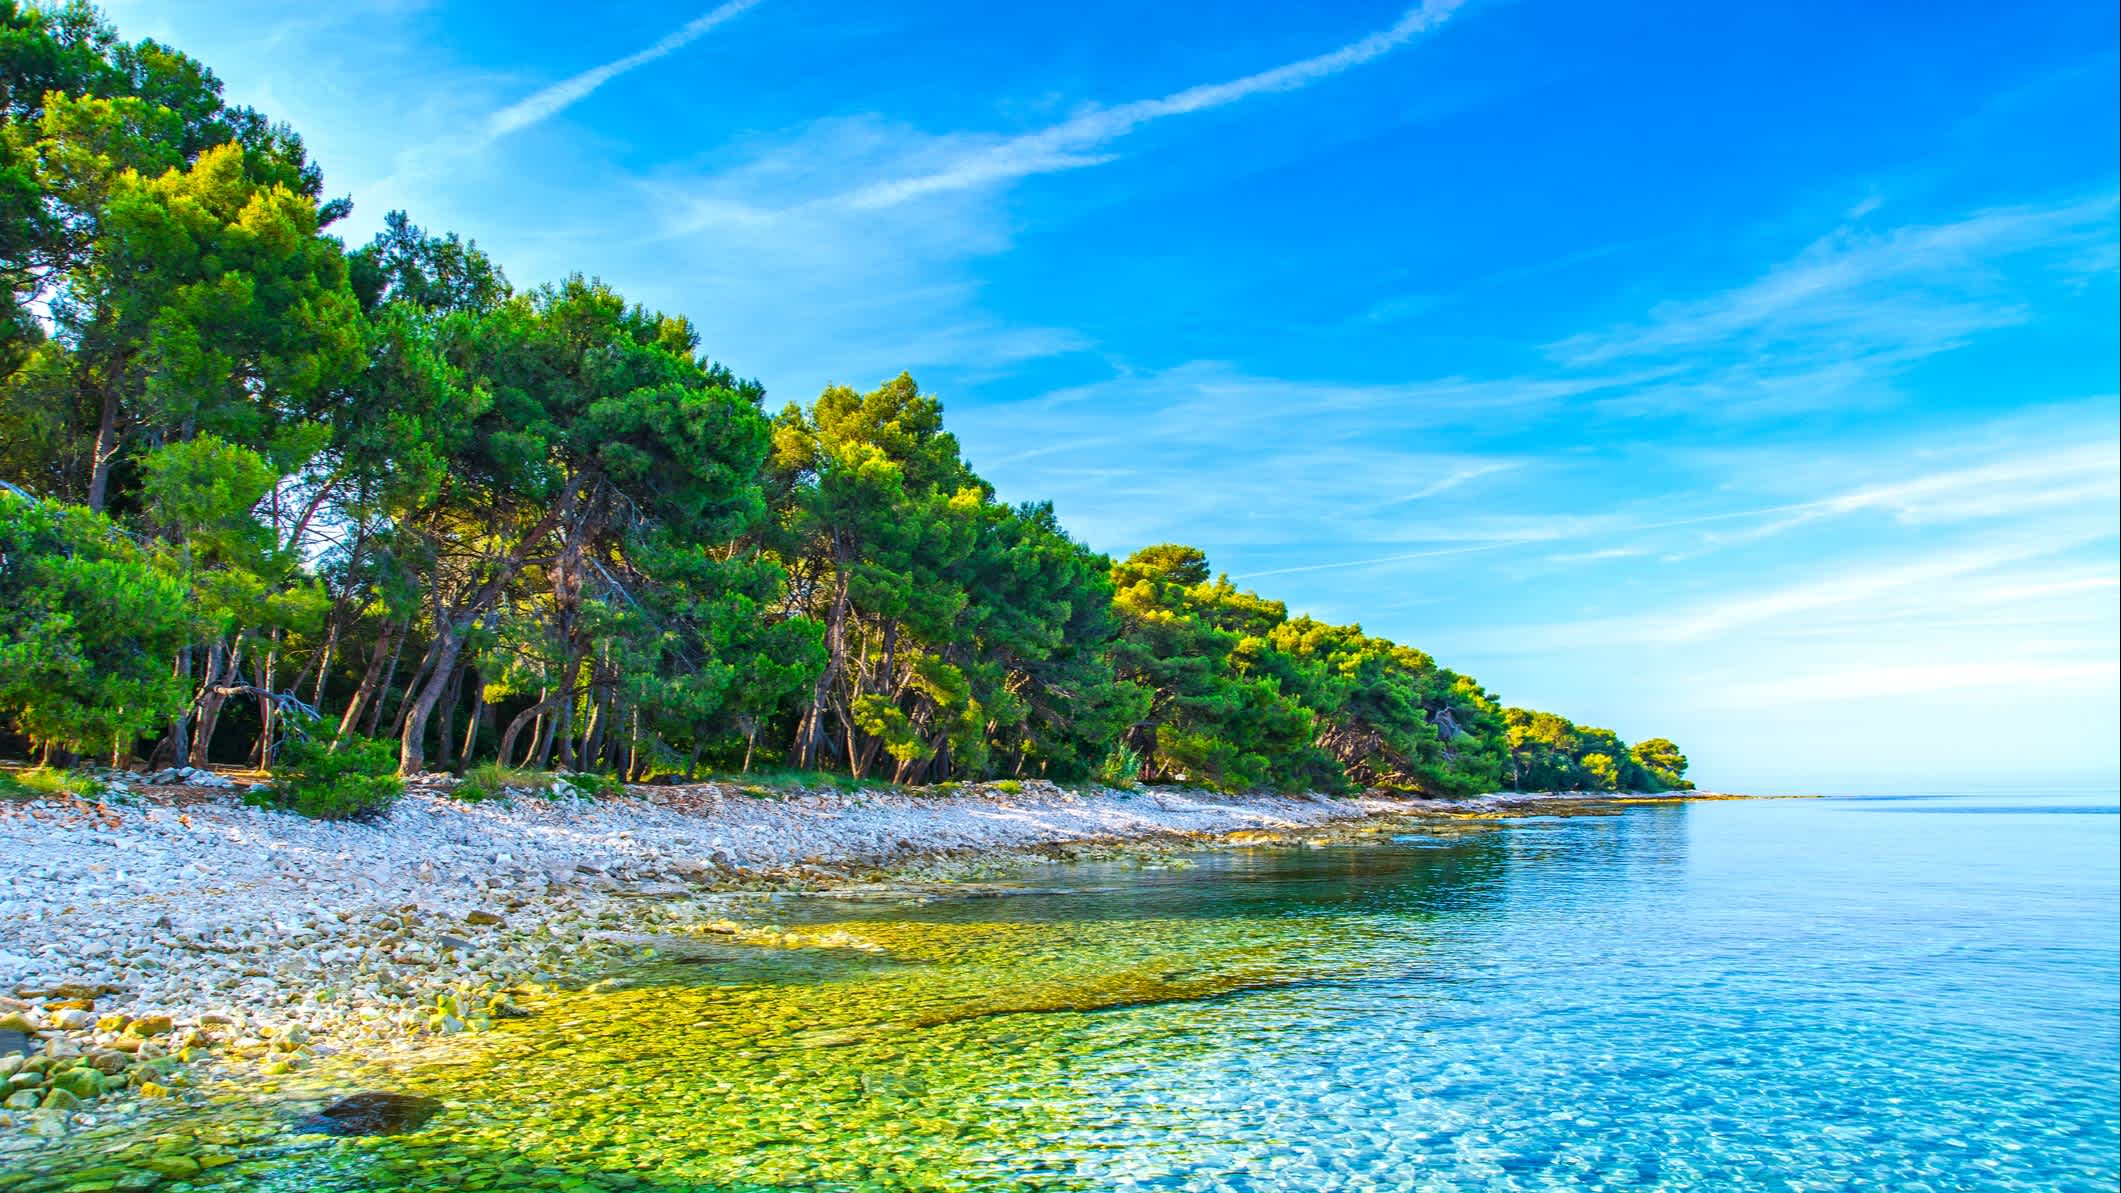 Côte Adriatique près de Pula, en Istrie, Croatie.

